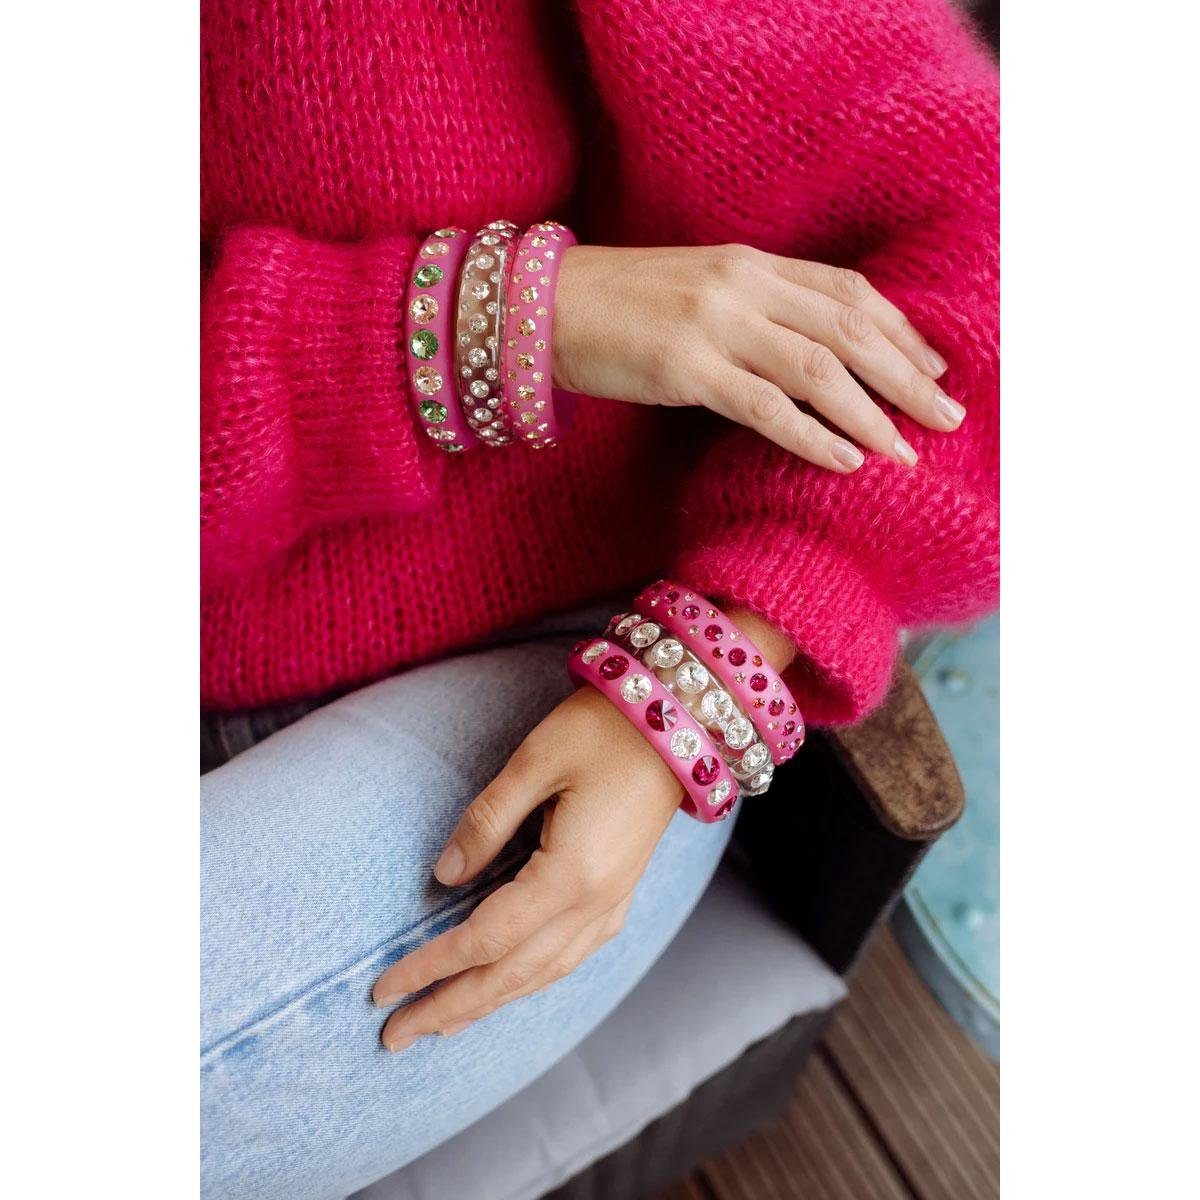 Coloristers Armband Armreif (Größe:XL) Sassari Kristallen Pinken und Pink Hellen mit